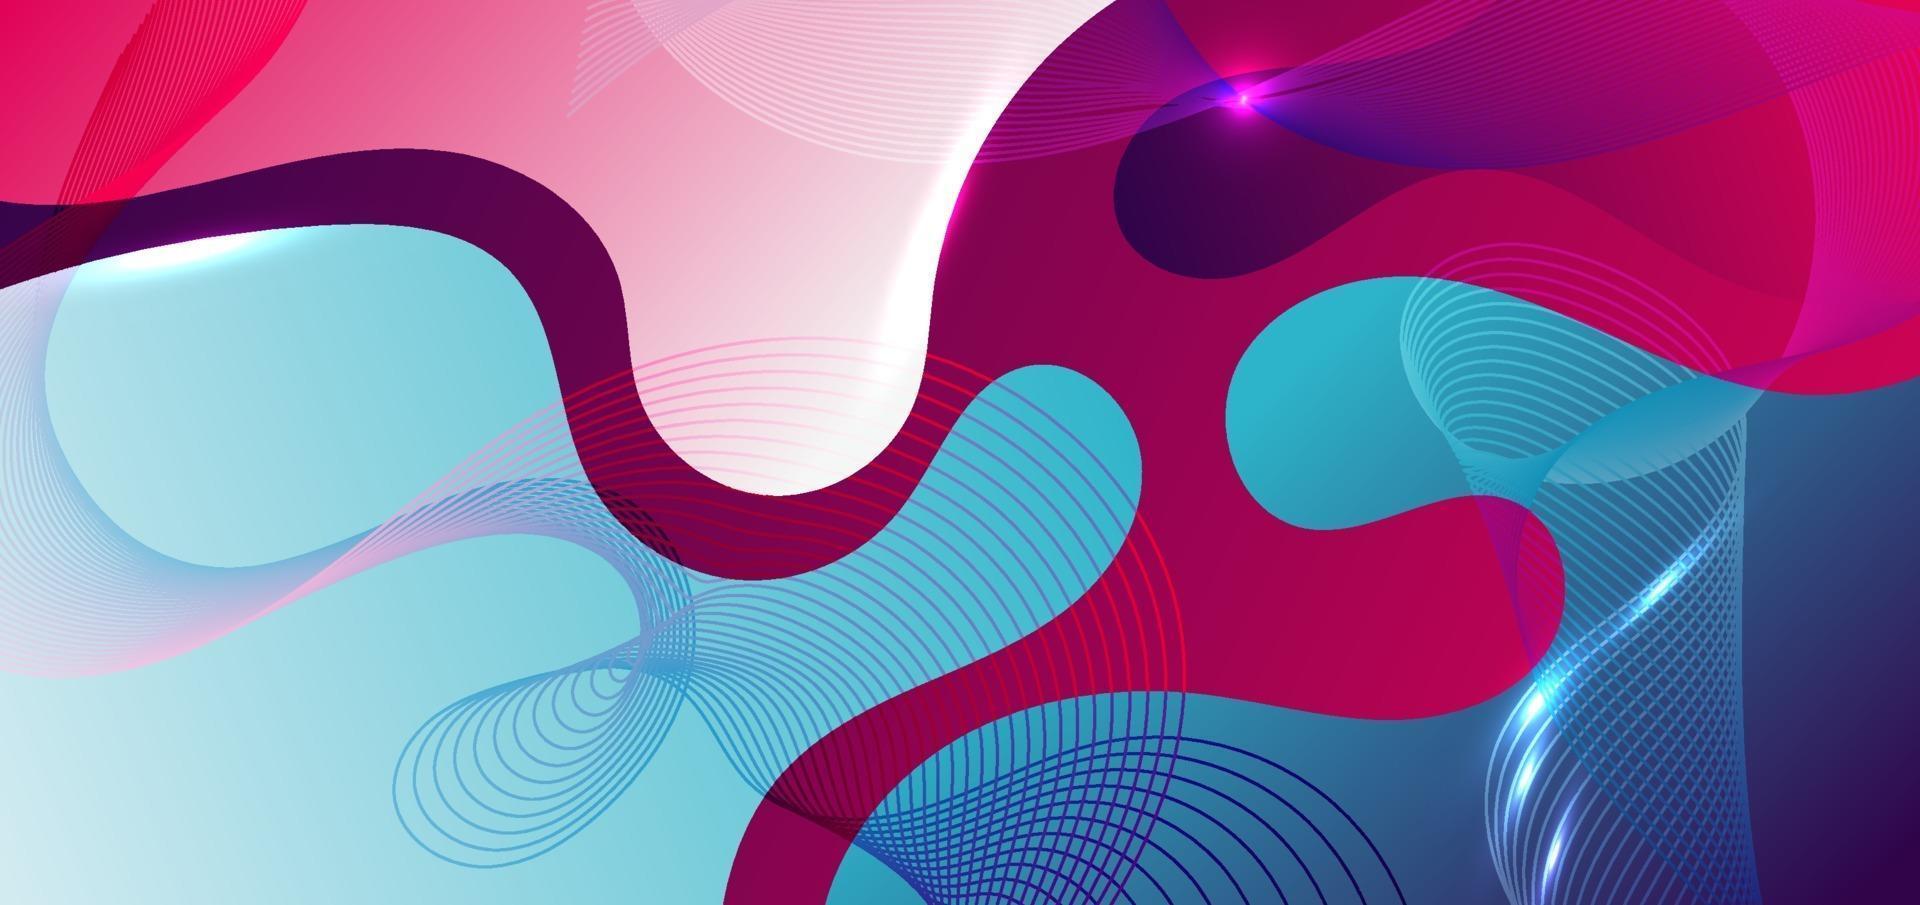 fundo gradiente de forma fluida abstrato azul e rosa com elemento de linha de onda. vetor